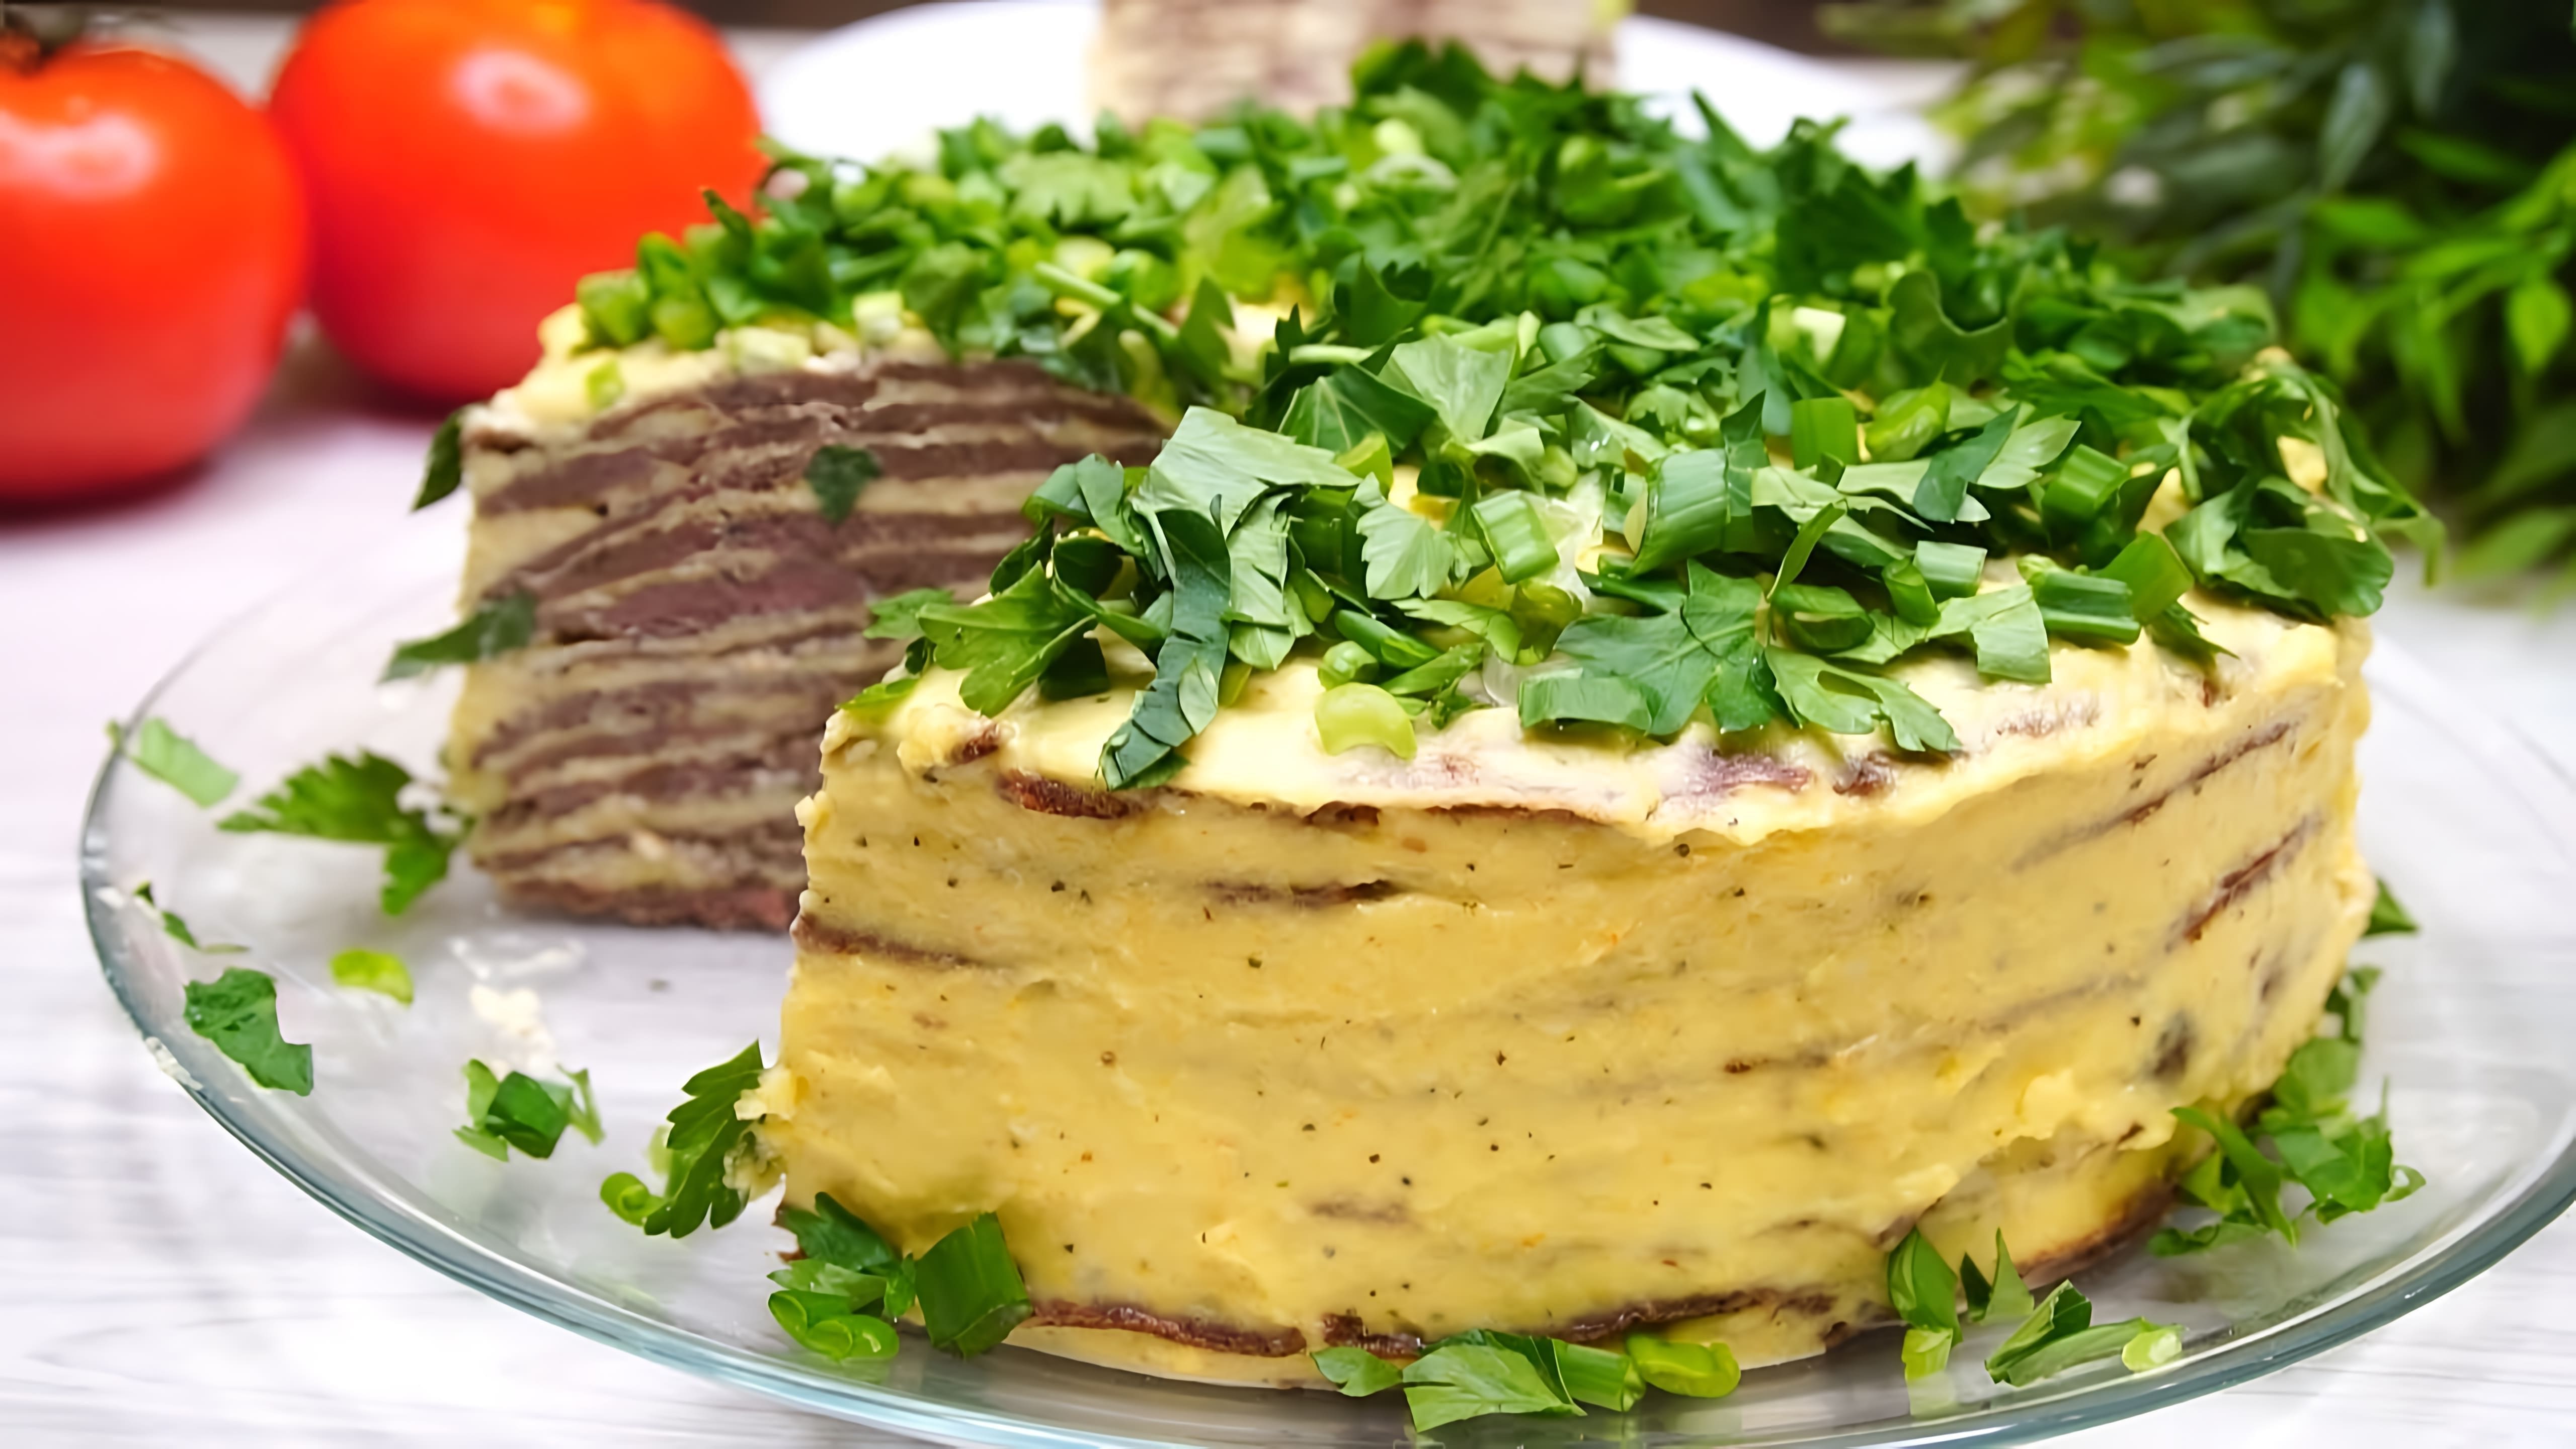 В этом видео демонстрируется рецепт приготовления закусочного торта "Нежность"